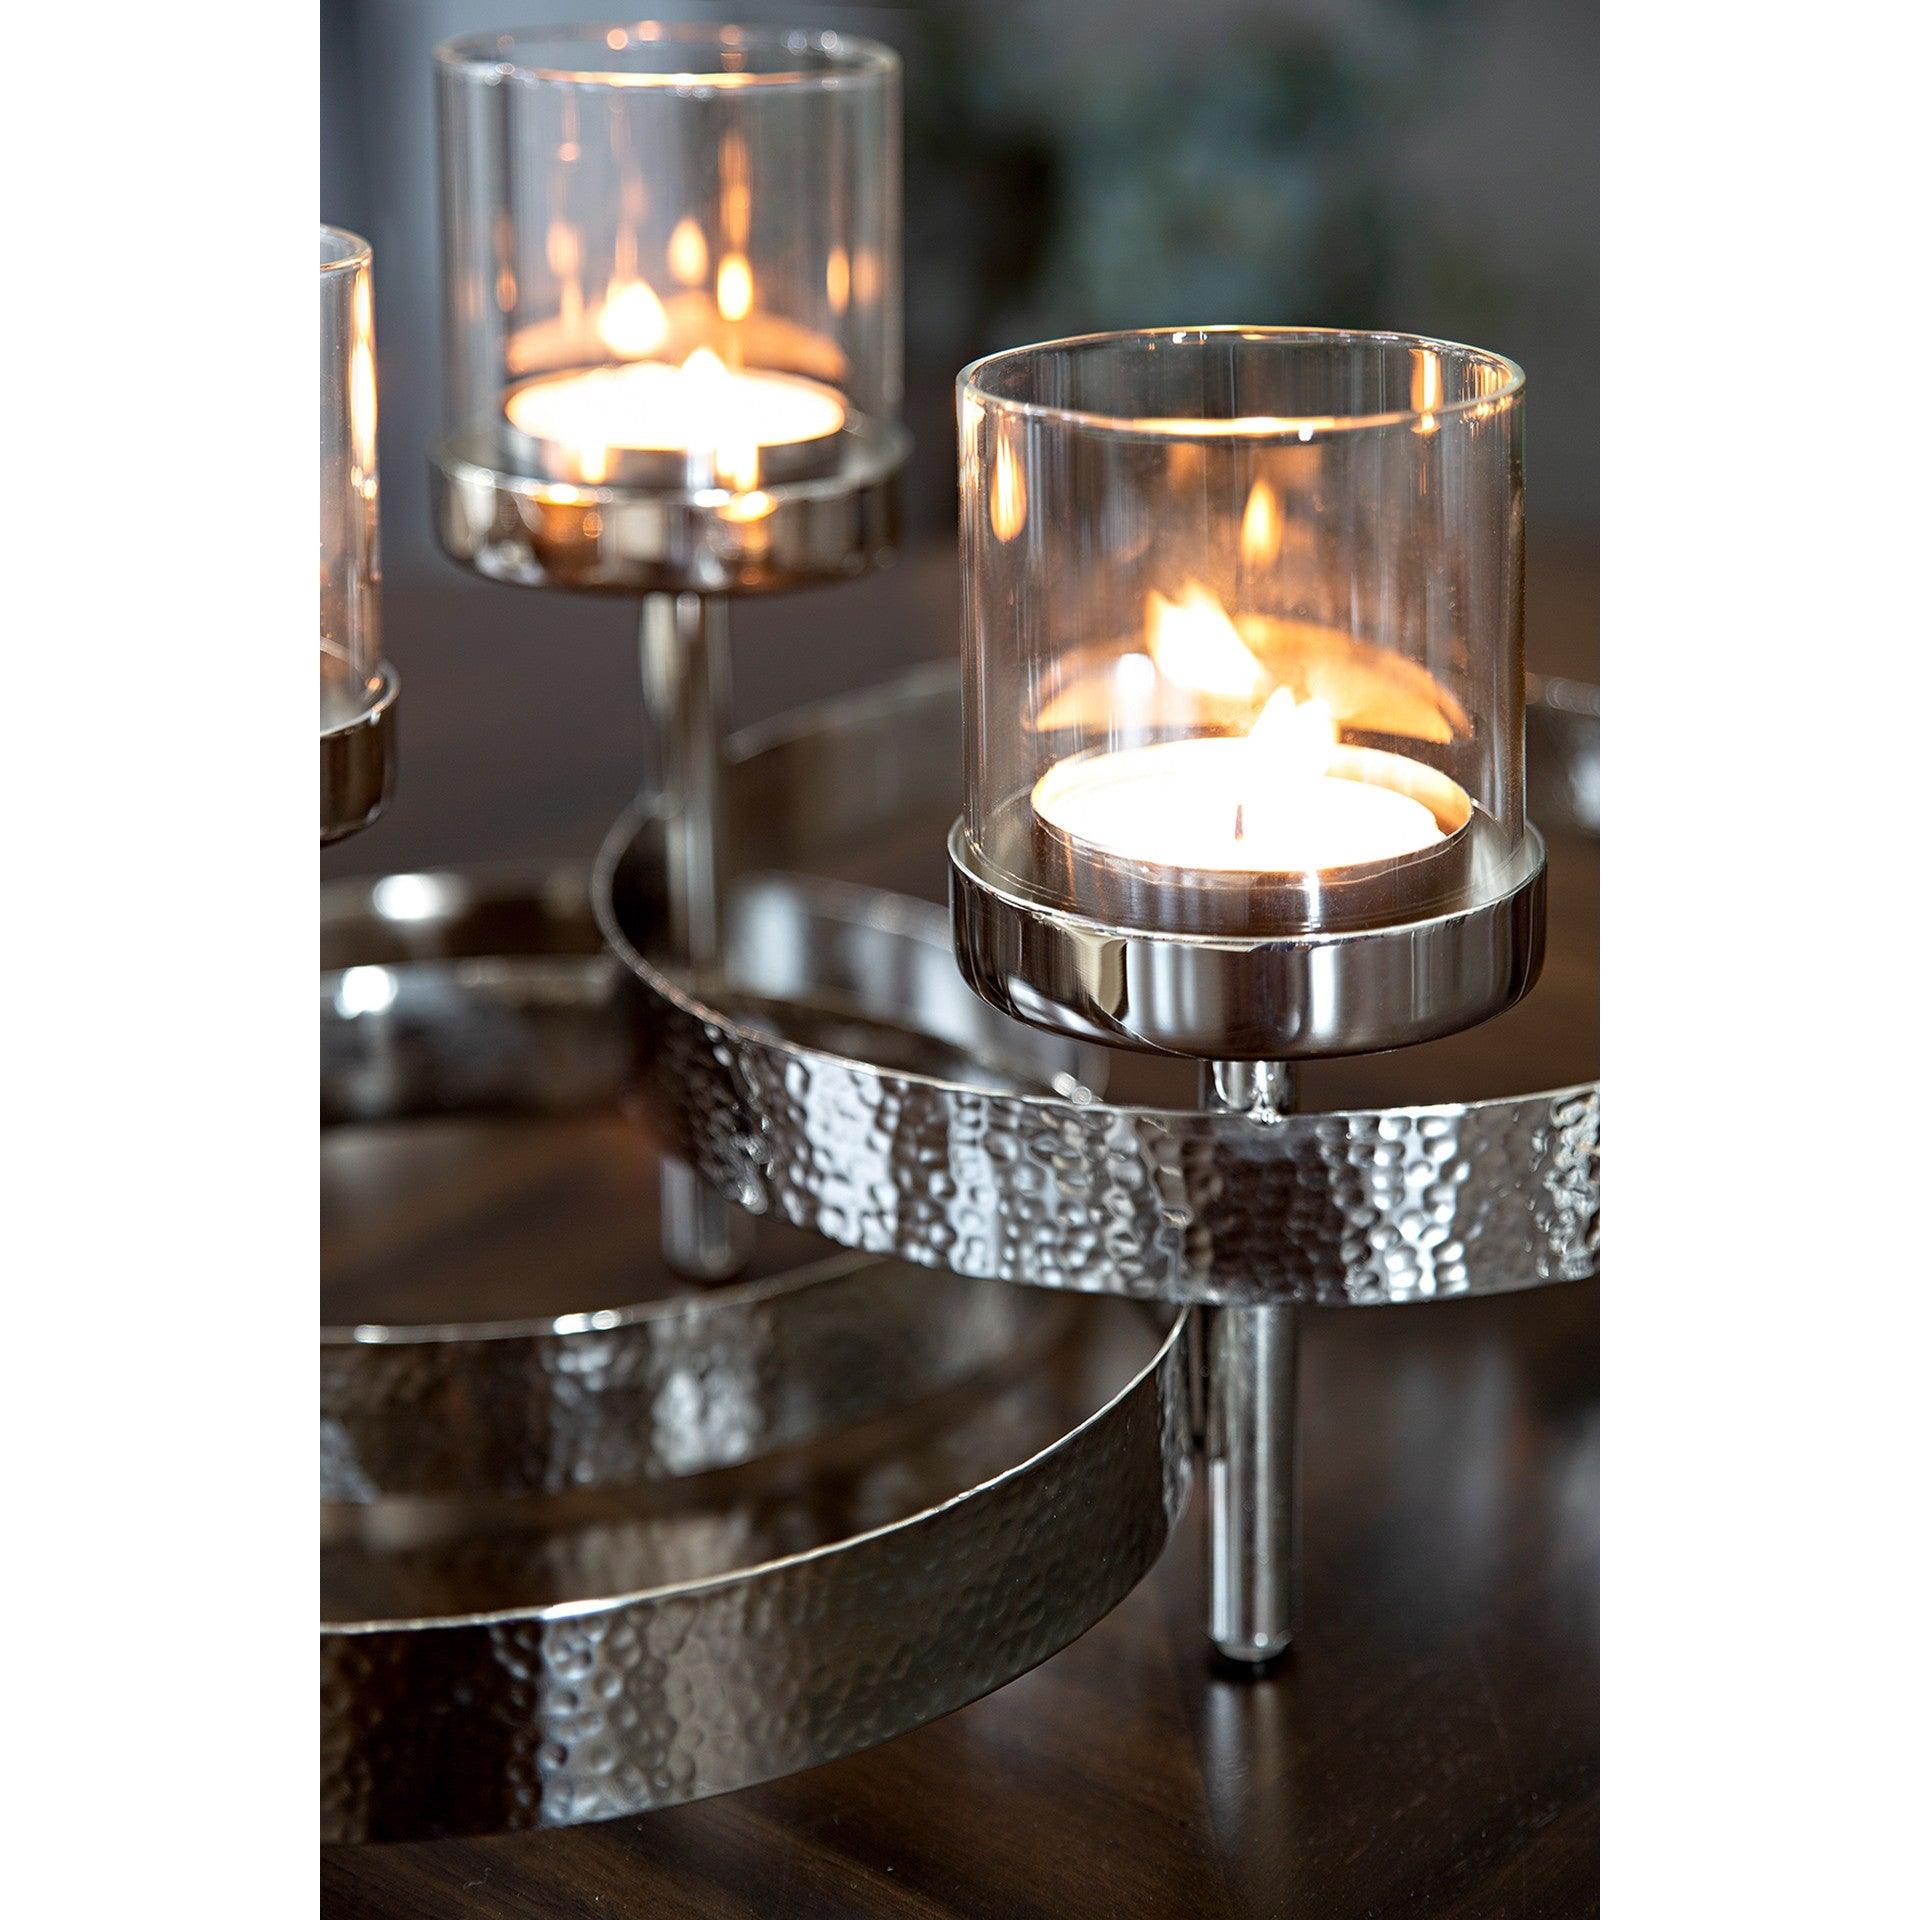 Fink MIRAGE Kerzenleuchter Adventskranz aus Edelstahl 4-flammig Handarbeit